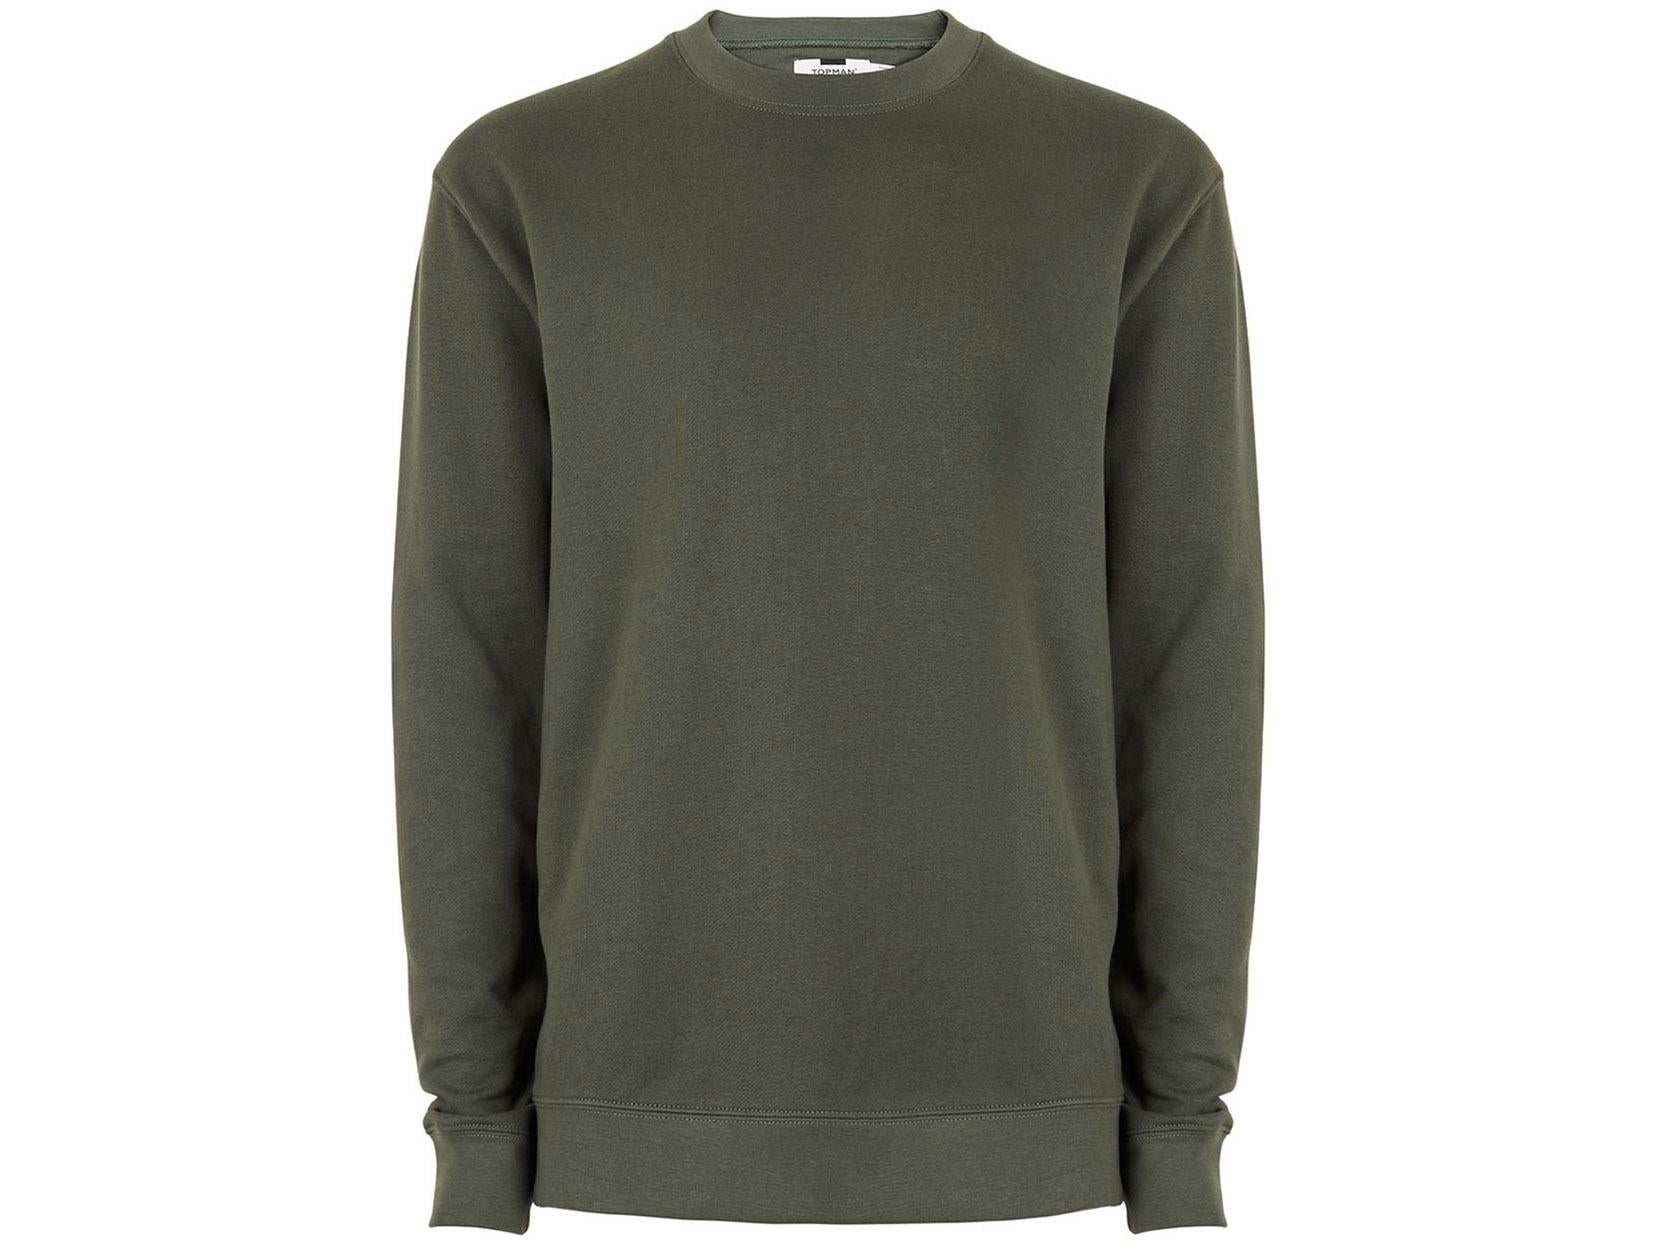 Khaki sweatshirt, £20, Topman